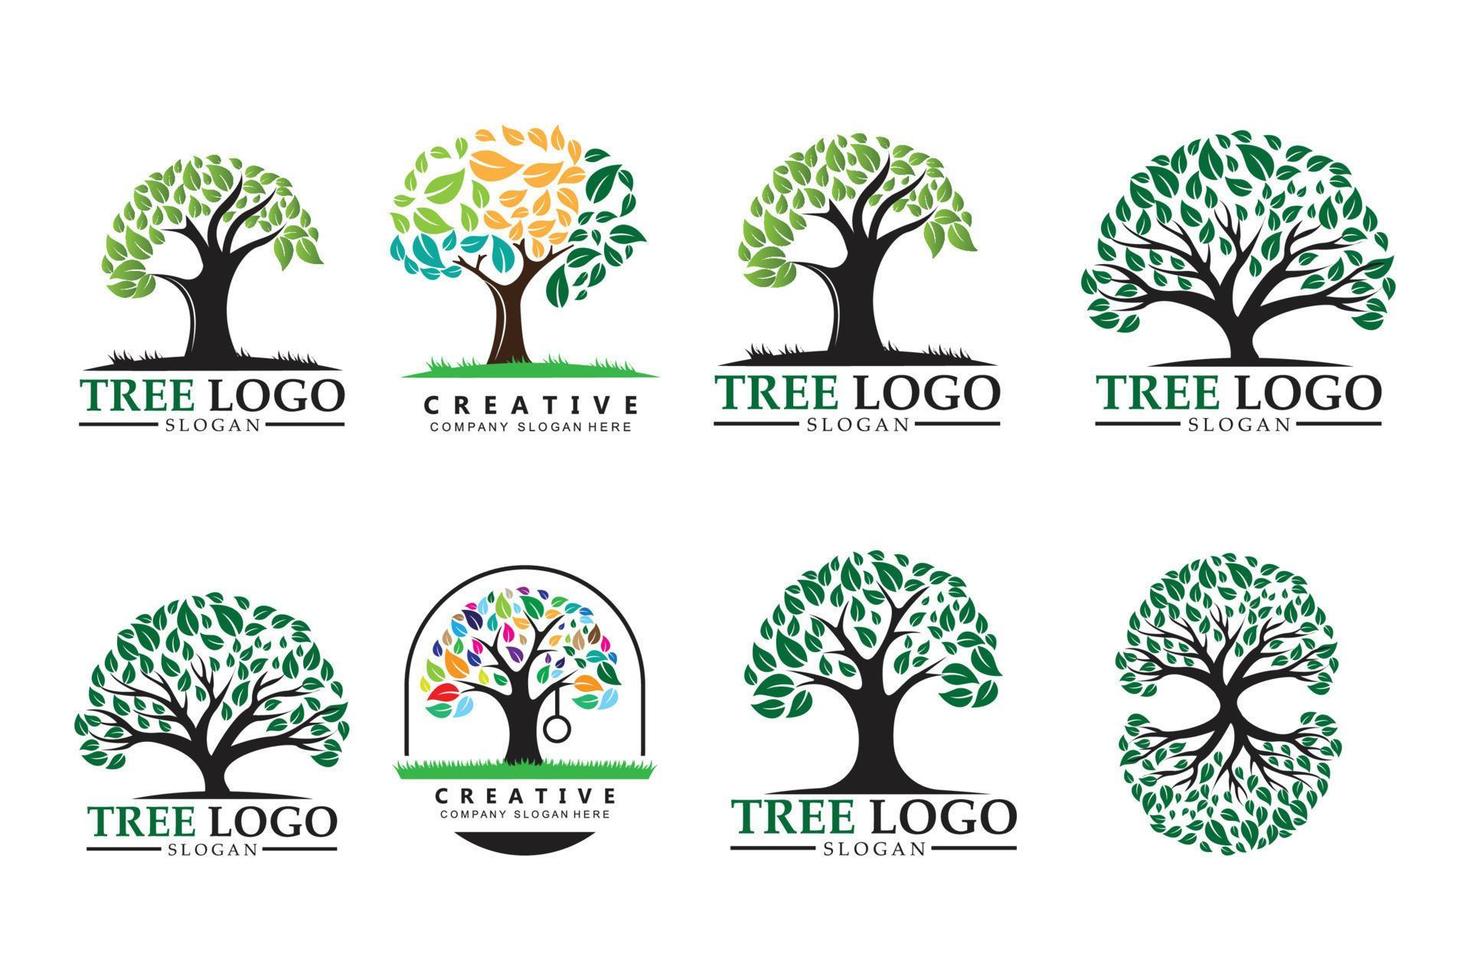 Tree Logo Design, Children's Learning Plant Illustration vector